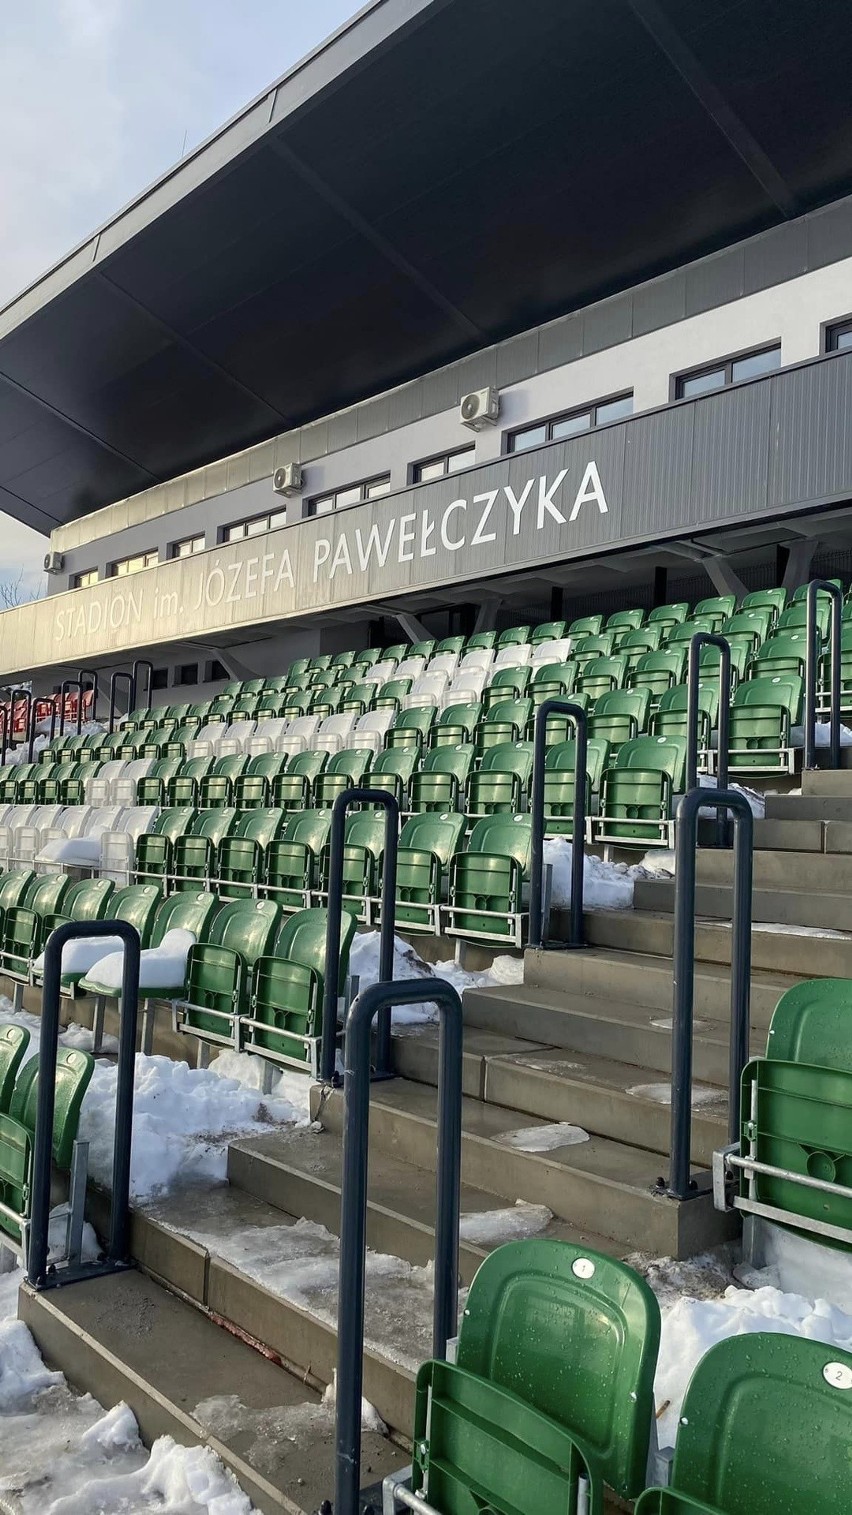 Oto nowy stadion miejski im. Józefa Pawełczyka w Czeladzi....